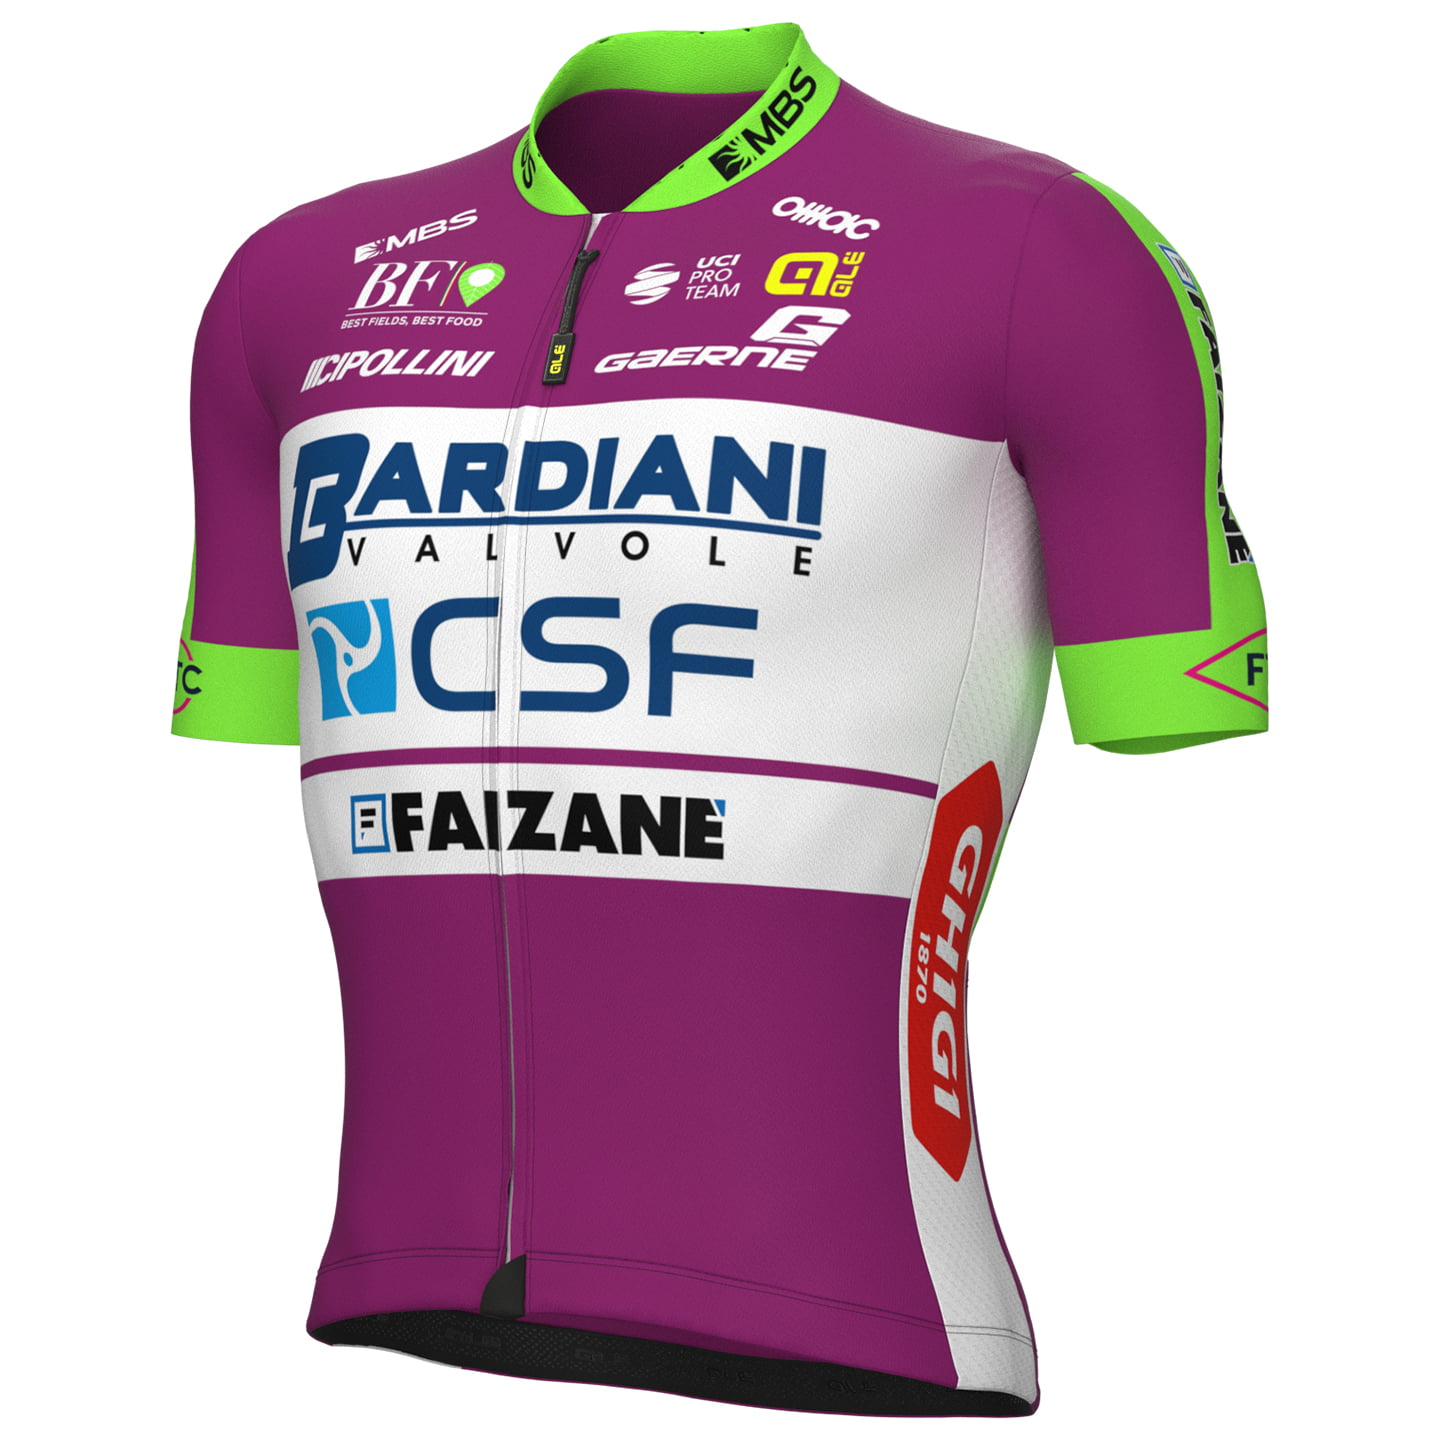 BARDIANI CSF FAIZANE 2022 Short Sleeve Jersey, for men, size 3XL, Bike shirt, Cycling gear